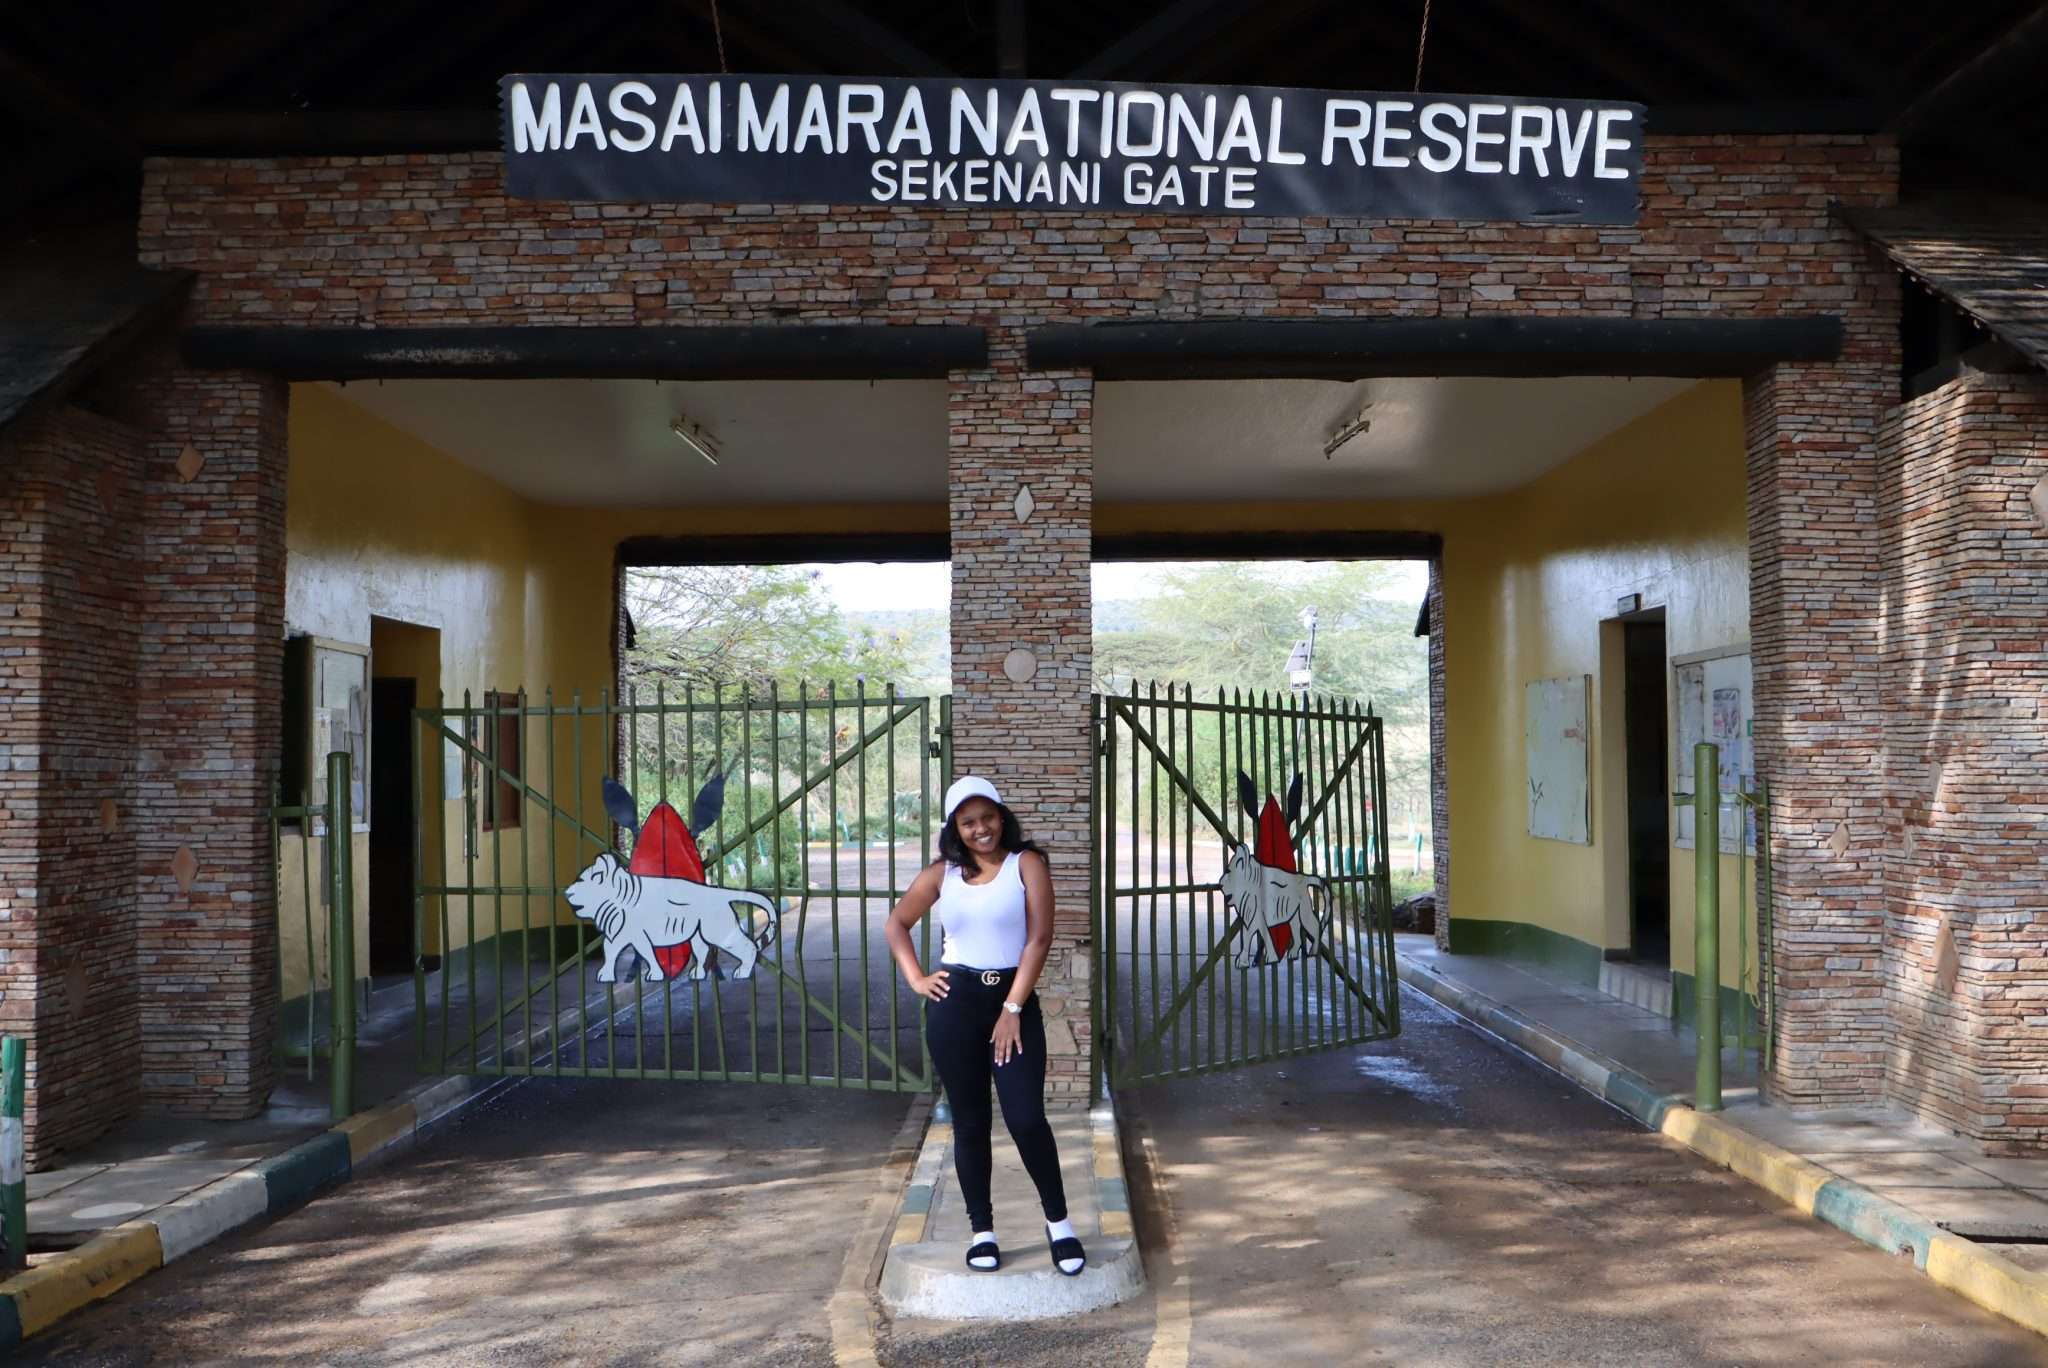 Entrance Fees for Masai Mara Masai Mara Park Fee